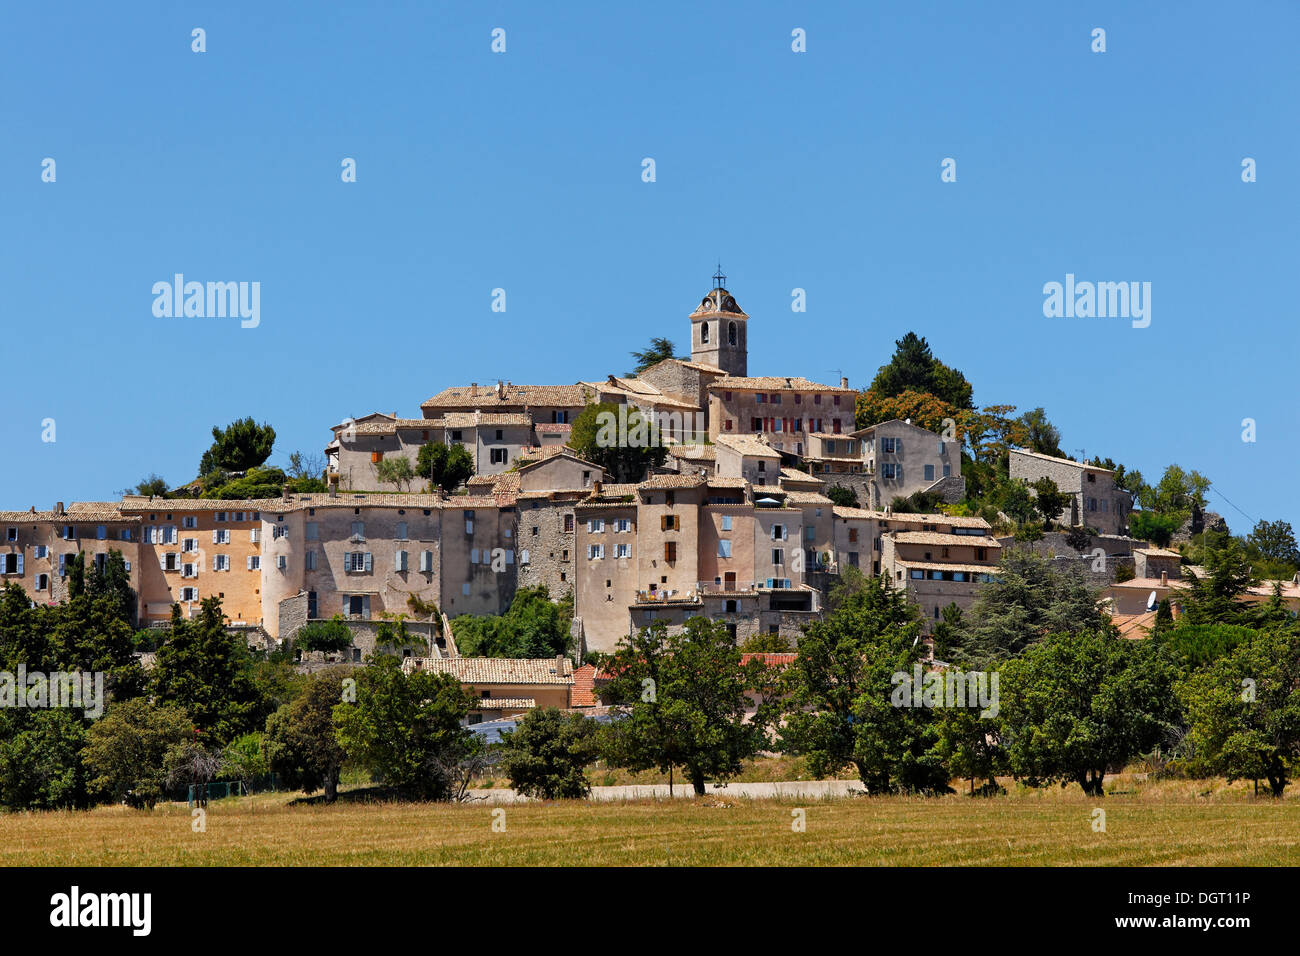 Village de montagne de Banon, Forcalquier, département Alpes-de-Haute-Provence, France, Europe Banque D'Images